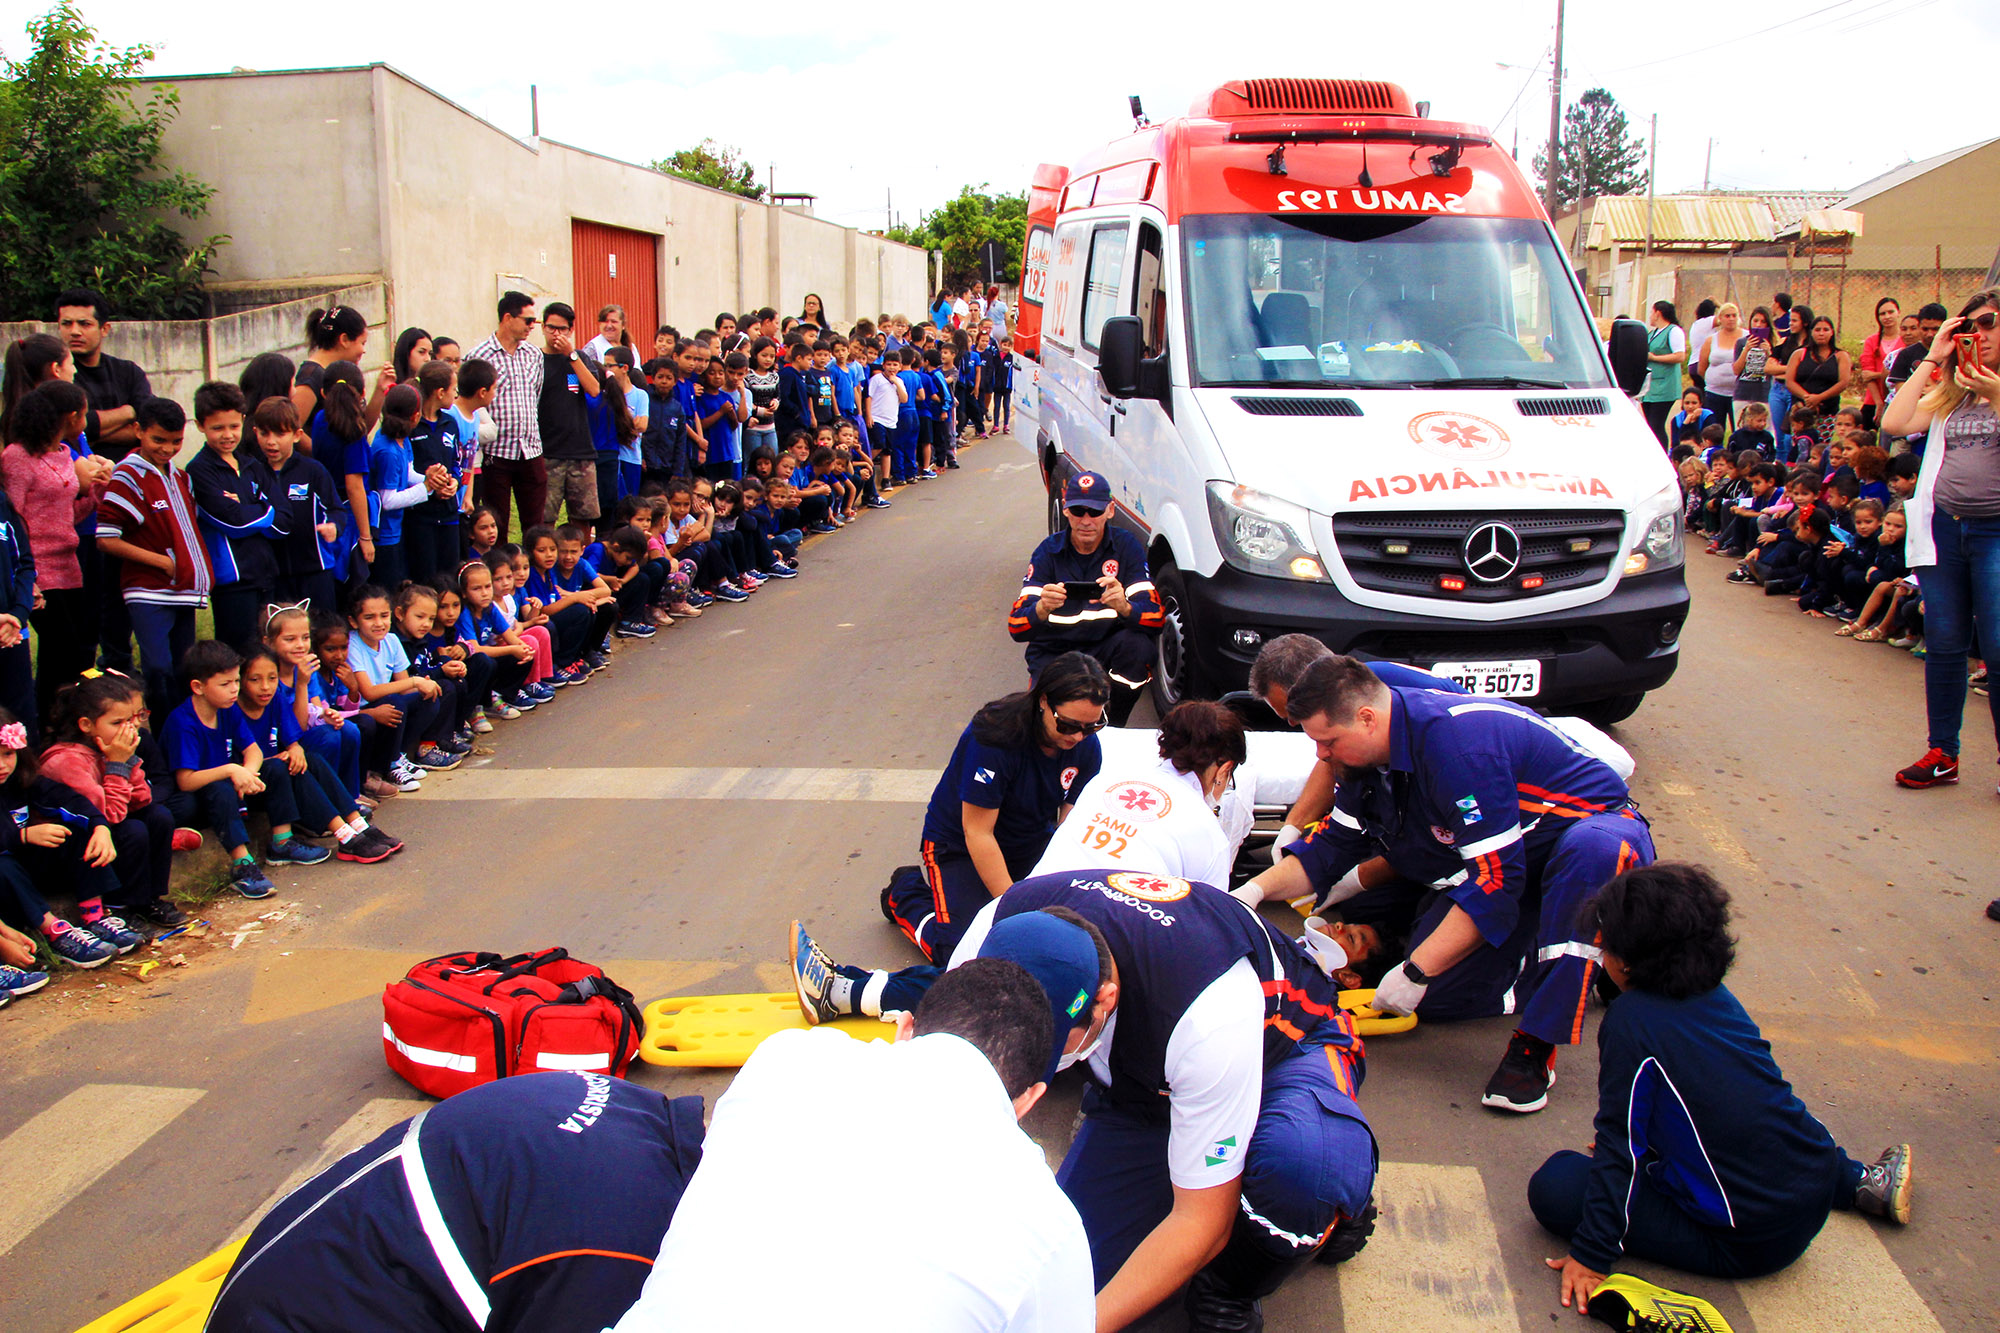 SAMU/Escola realiza simulado de acidente com estudantes